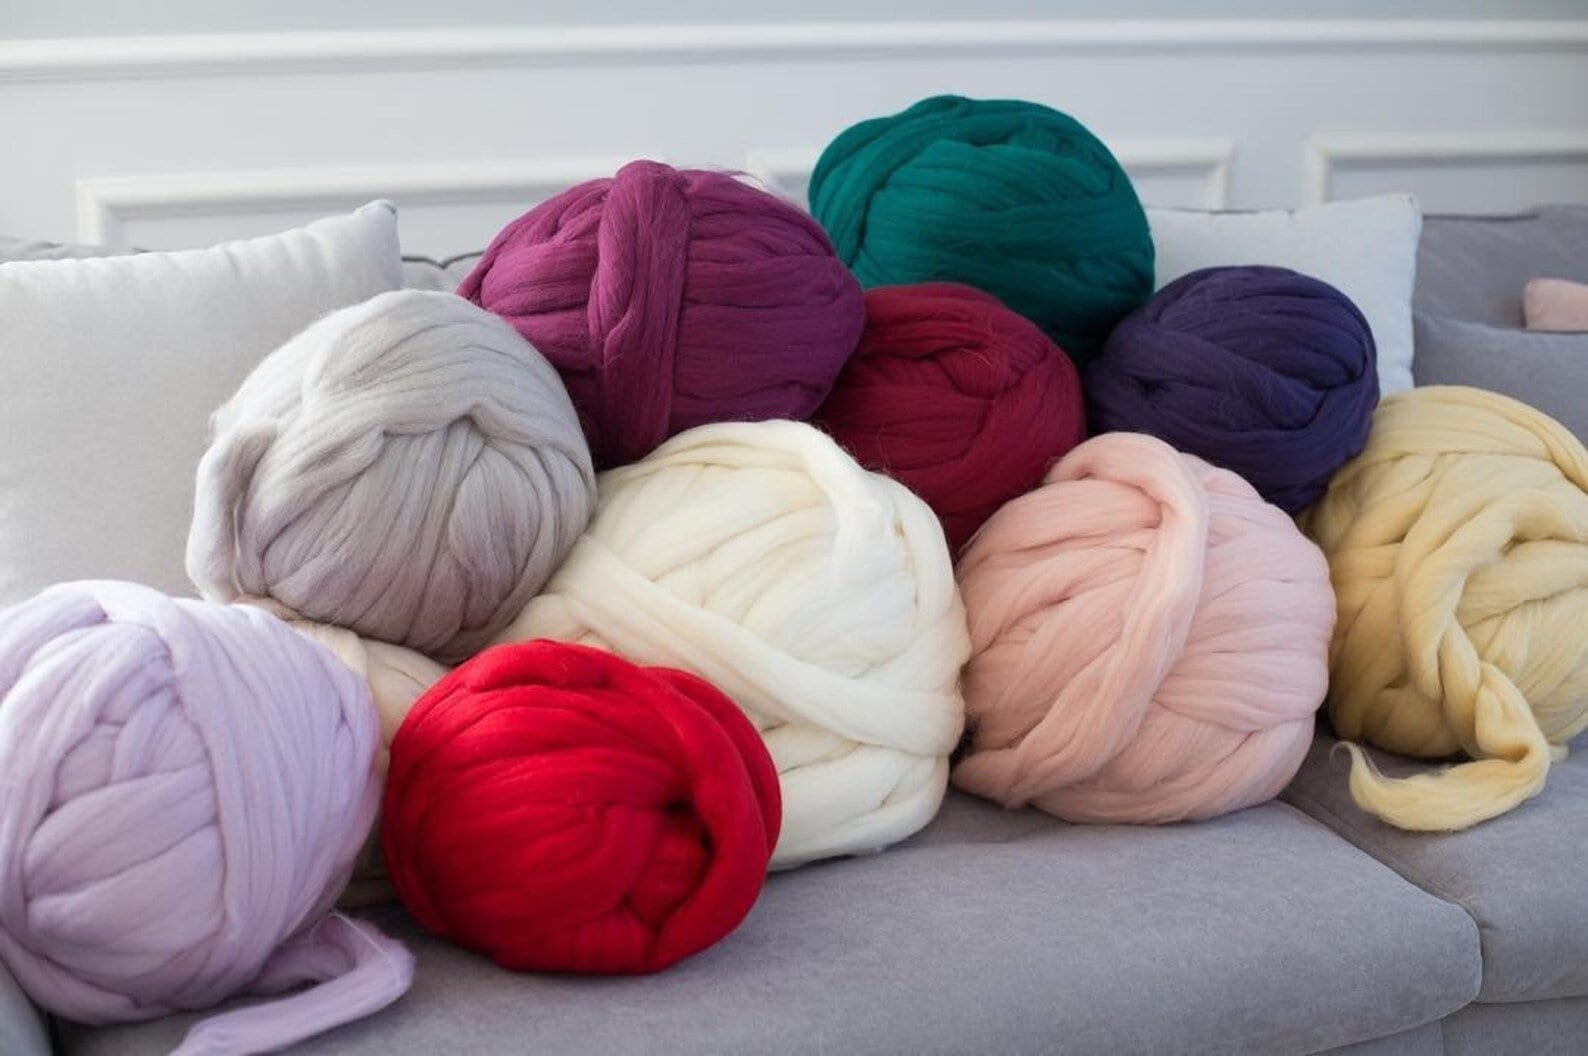 14 Colors Wool Thread Wool Yarn Super Soft Arm Knit Wool Roving Crochet DIY  Craft